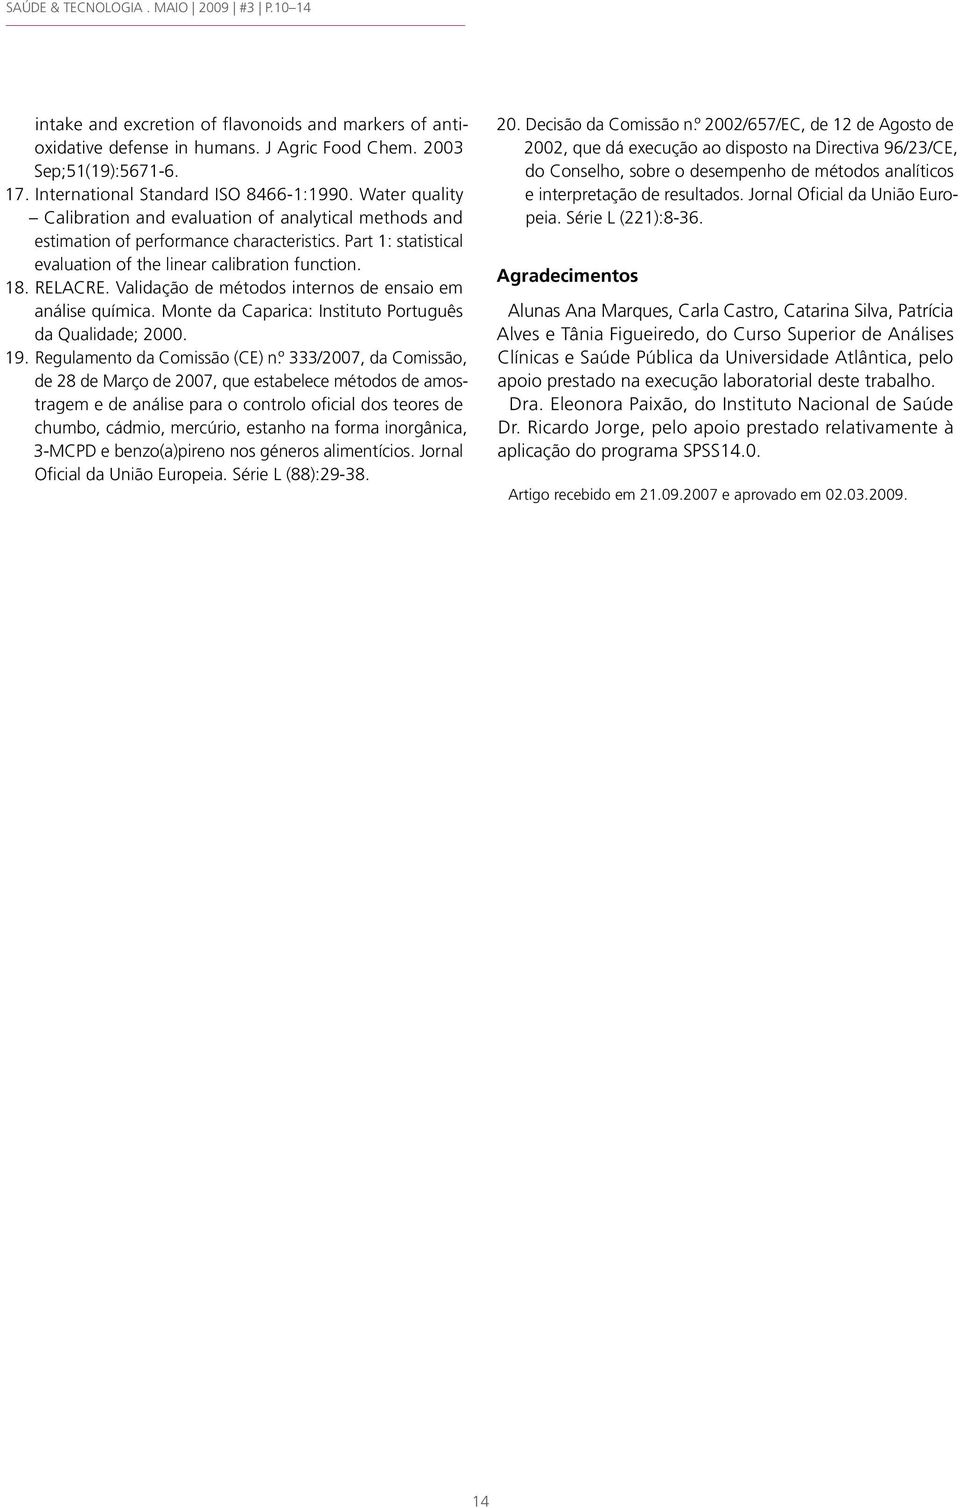 Validação de métodos internos de ensaio em análise química. Monte da Caparica: Instituto Português da Qualidade; 2000. 19. Regulamento da Comissão (CE) n.